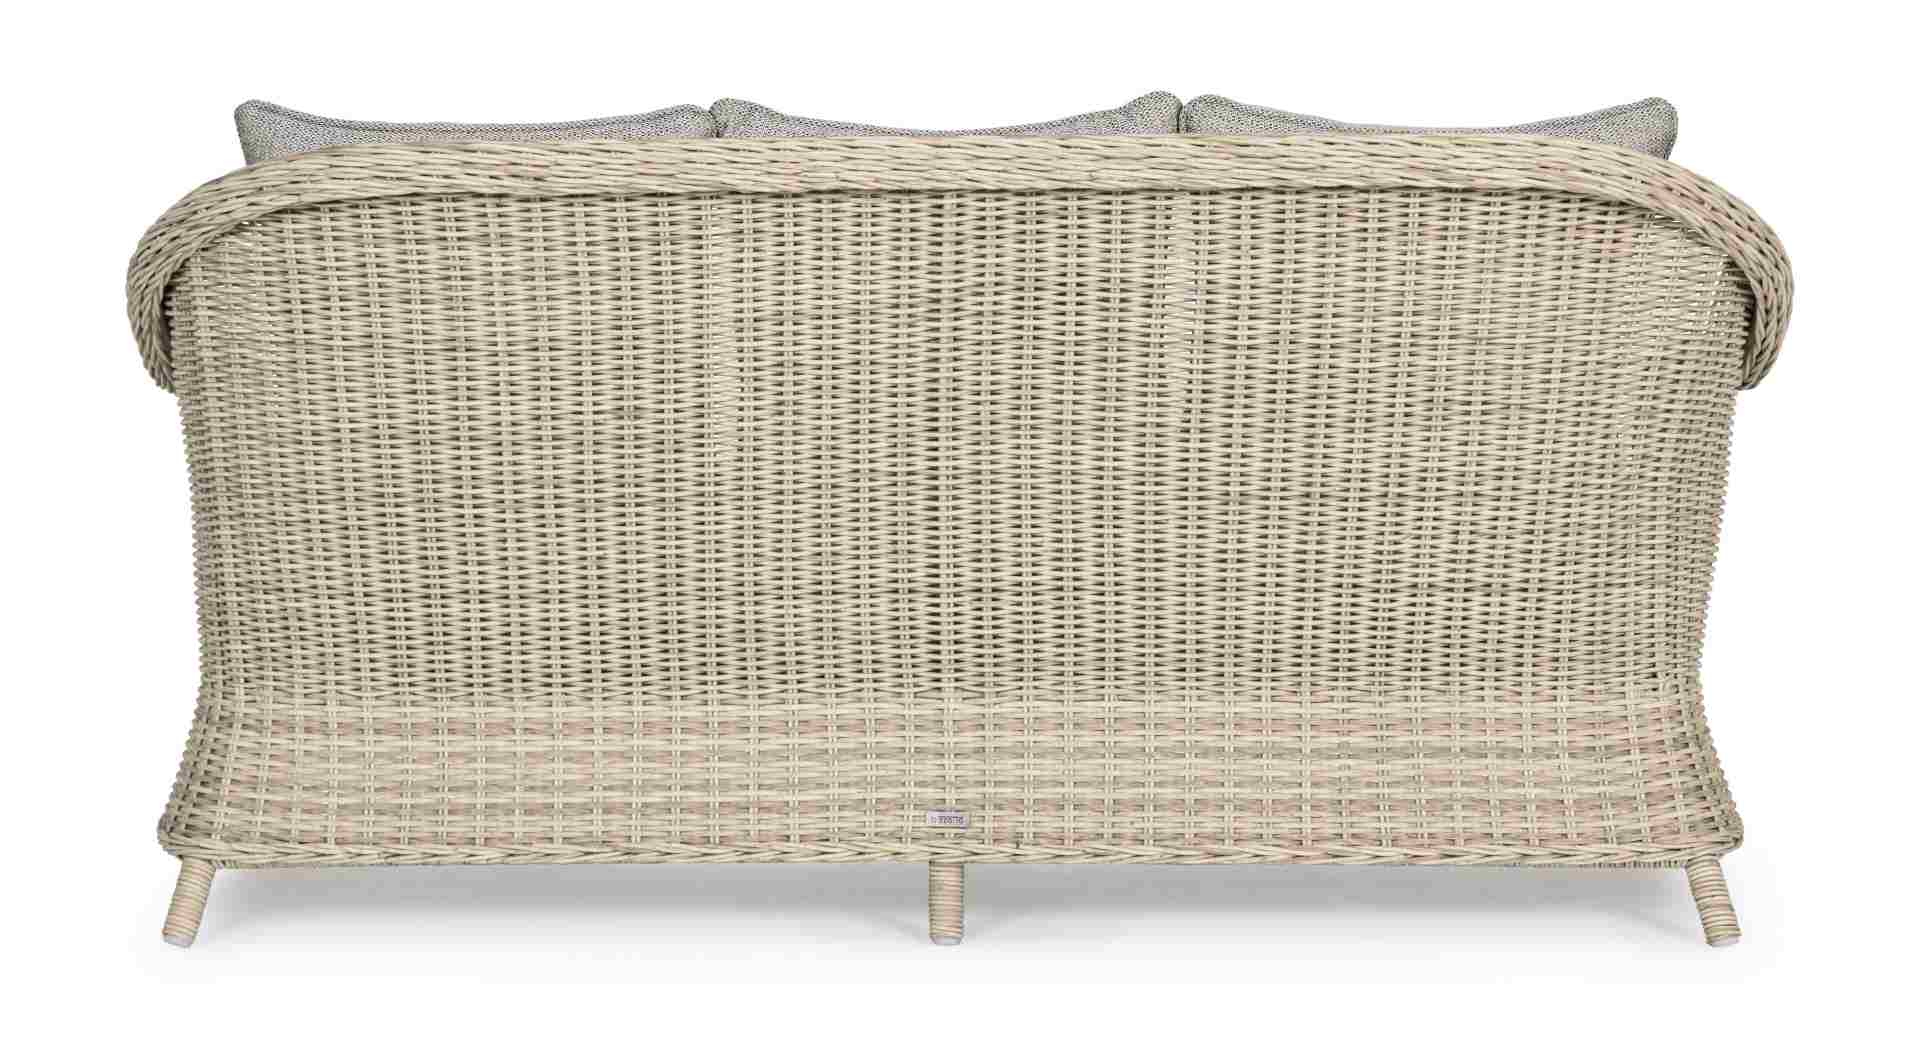 Das Gartensofa Aditya überzeugt mit seinem klassischen Design. Gefertigt wurde es aus Kunstfasern, welche einen Sand Farbton besitzen. Das Gestell ist aus Aluminium und hat eine Anthrazit Farbe. Der Sofa verfügt über eine Sitzhöhe von 42 cm und ist für de